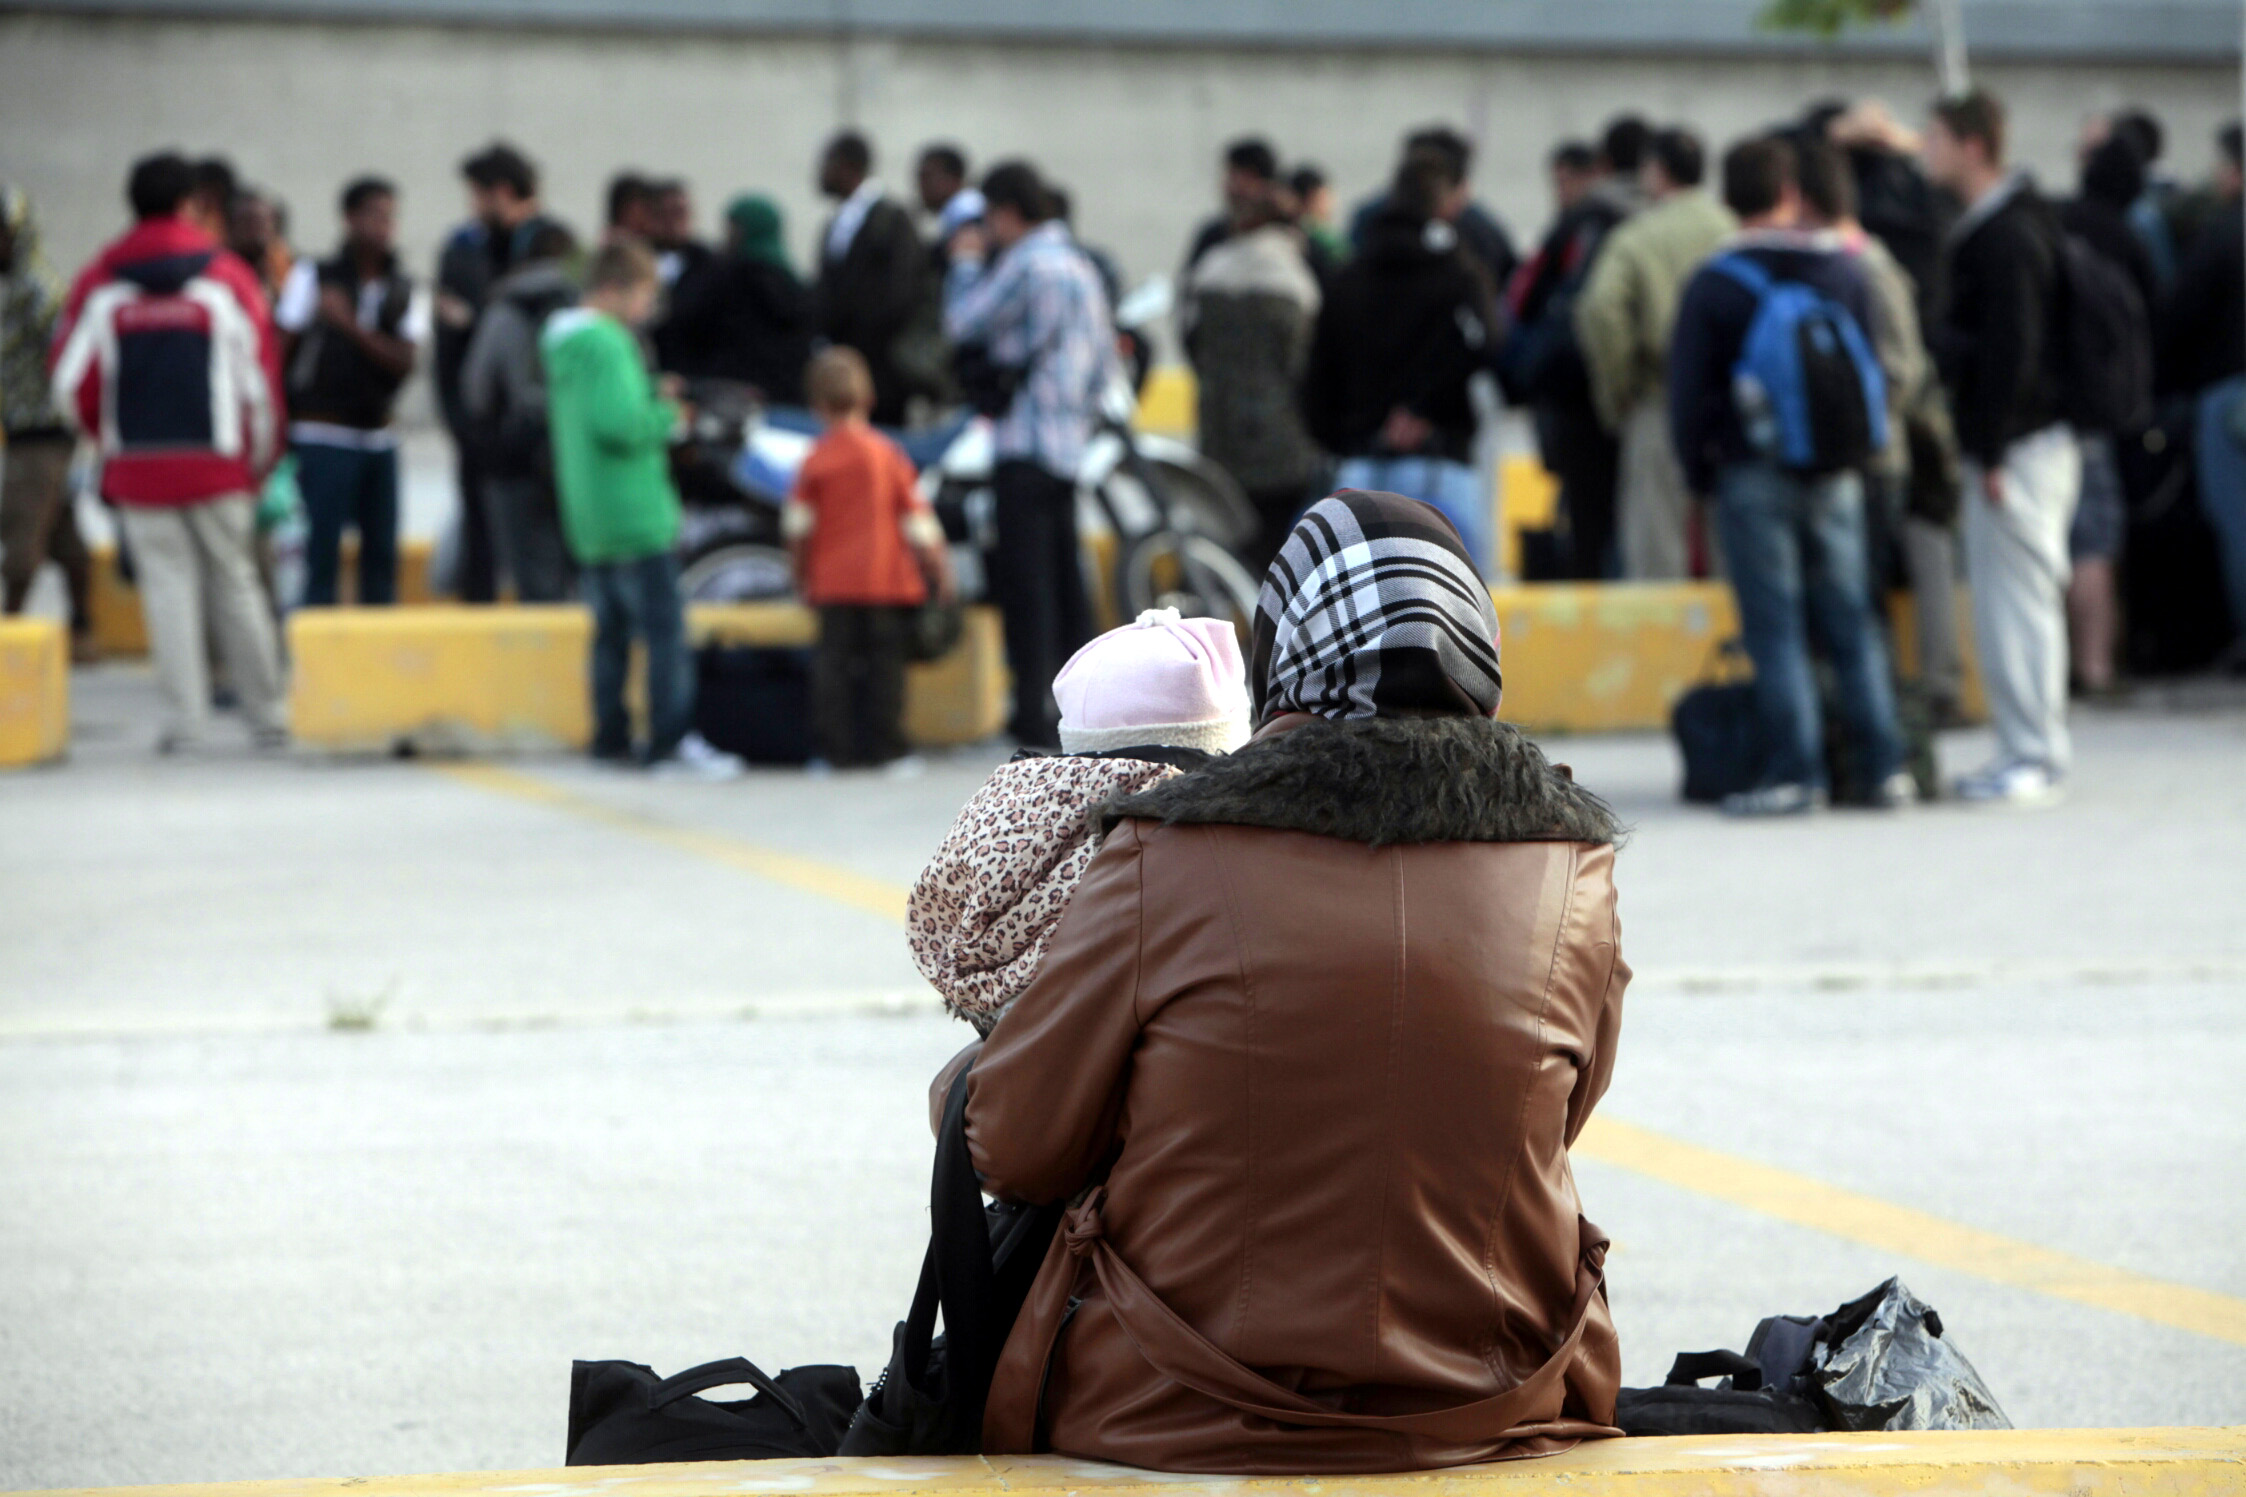 ΣΥΡΙΖΑ: Πρέπει να αλλάξει ριζικά η πολιτική για τους πρόσφυγες στην Ε.Ε.